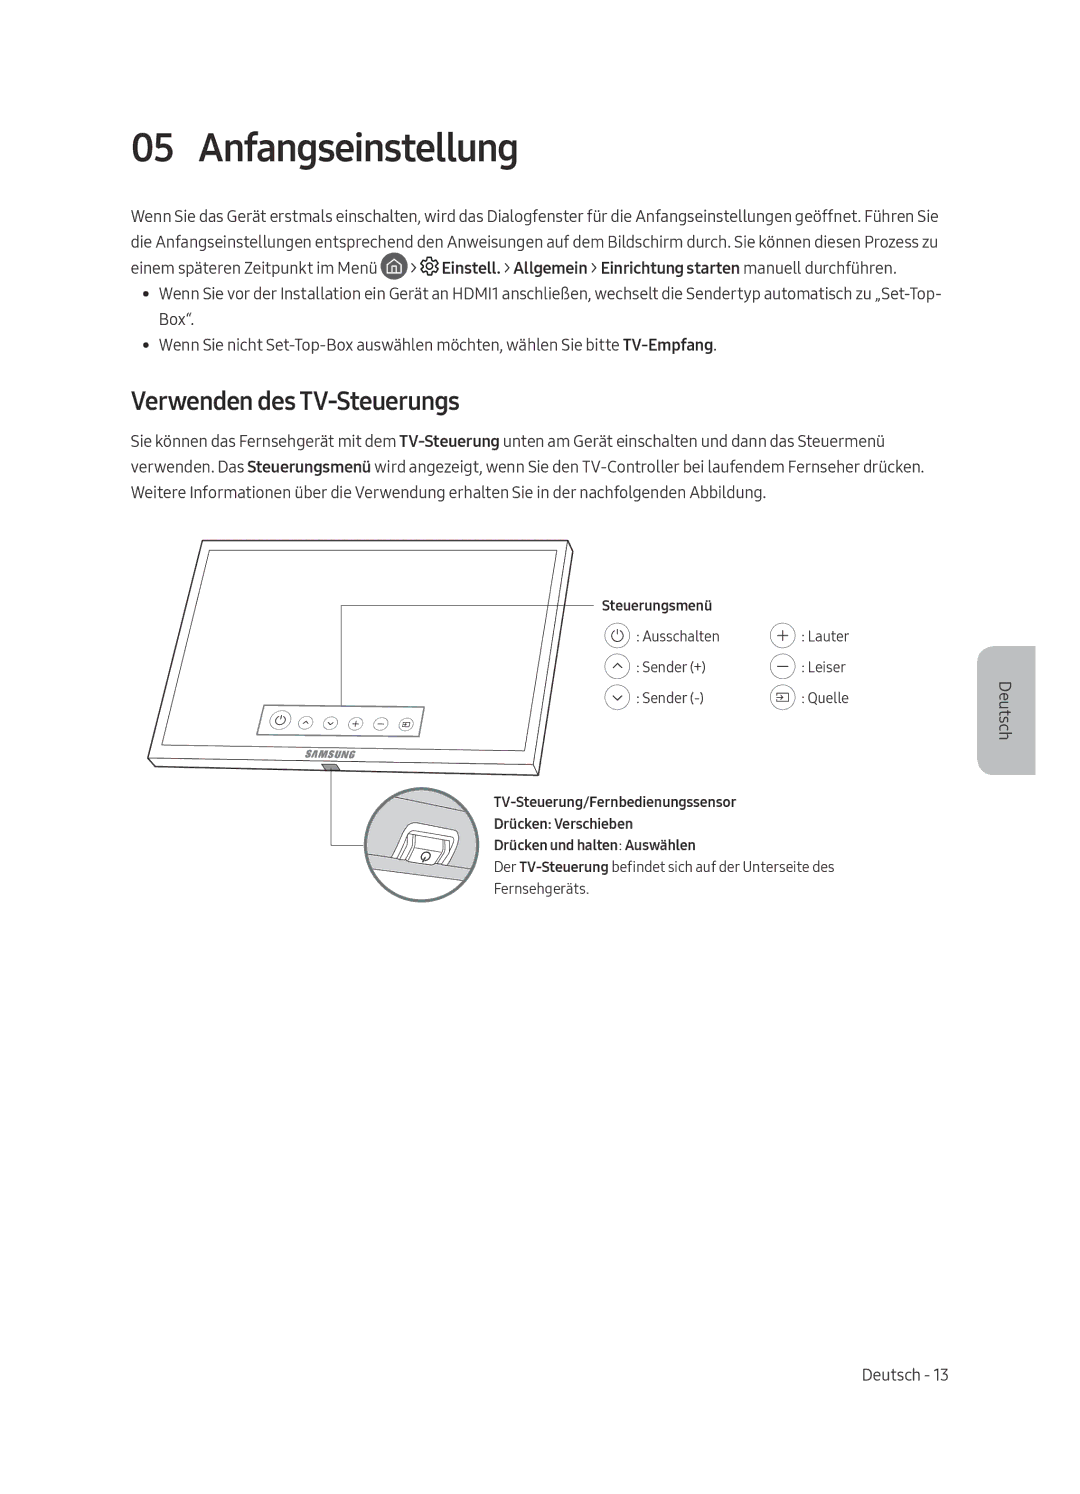 Samsung UE55MU8005TXXC, UE65MU8005TXXC, UE75MU8005TXXC, UE49MU8005TXXC manual Anfangseinstellung, Verwenden des TV-Steuerungs 